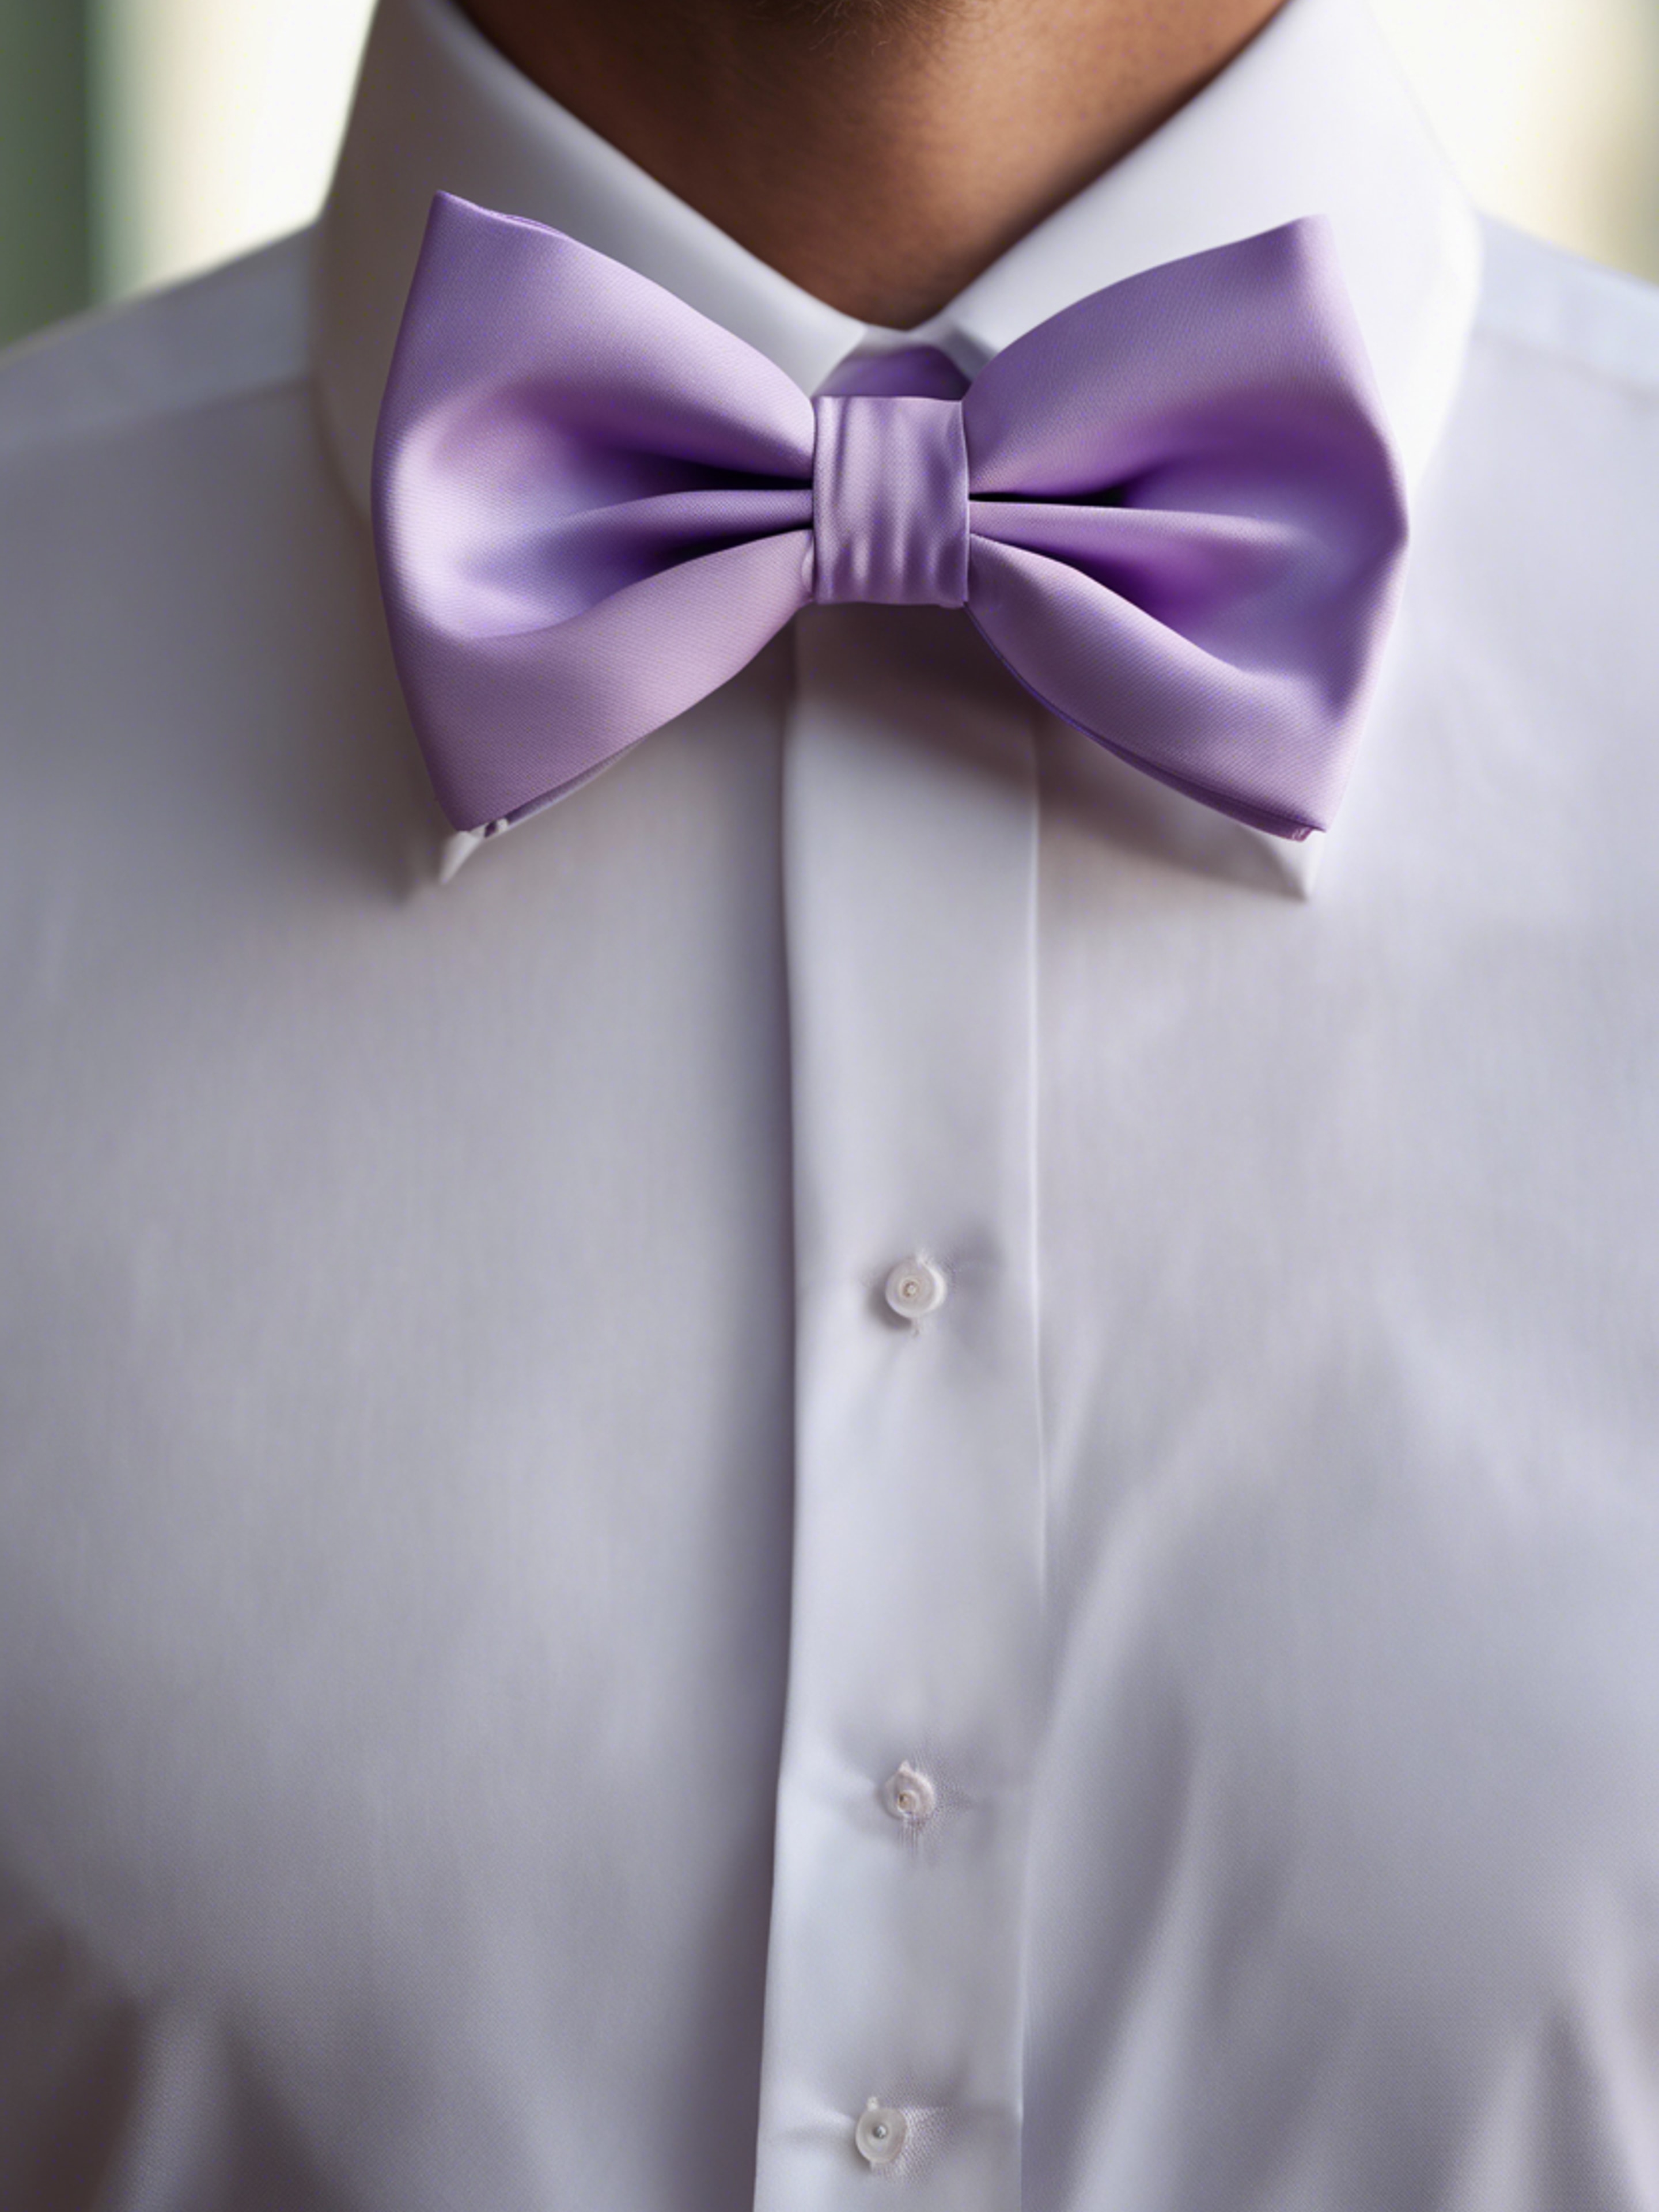 A preppy pastel purple bow tie on a crisp white shirt. Валлпапер[5e87c7412f5947d28f4c]